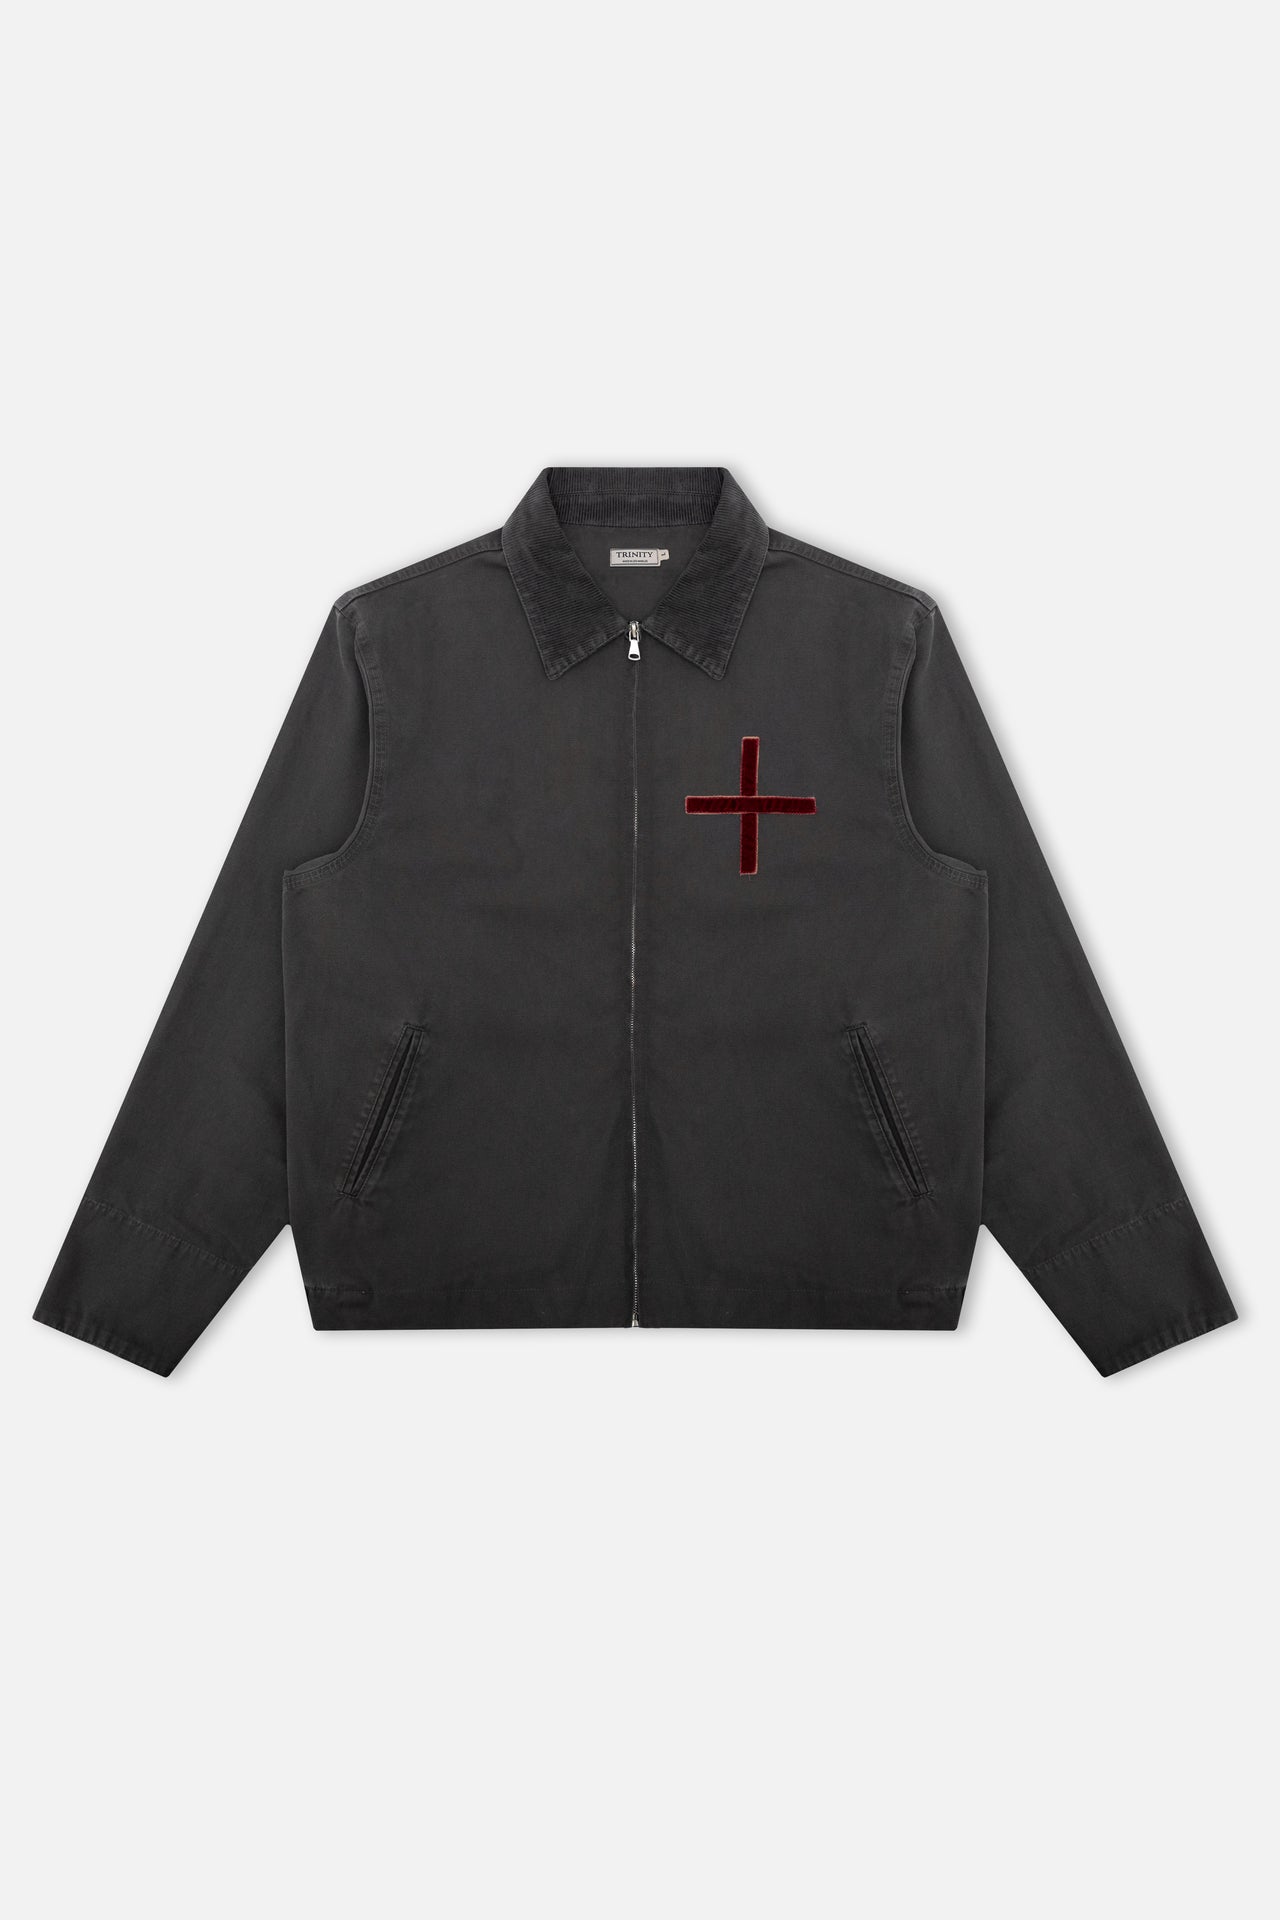 Charcoal Canvas Velvet Cross Jacket